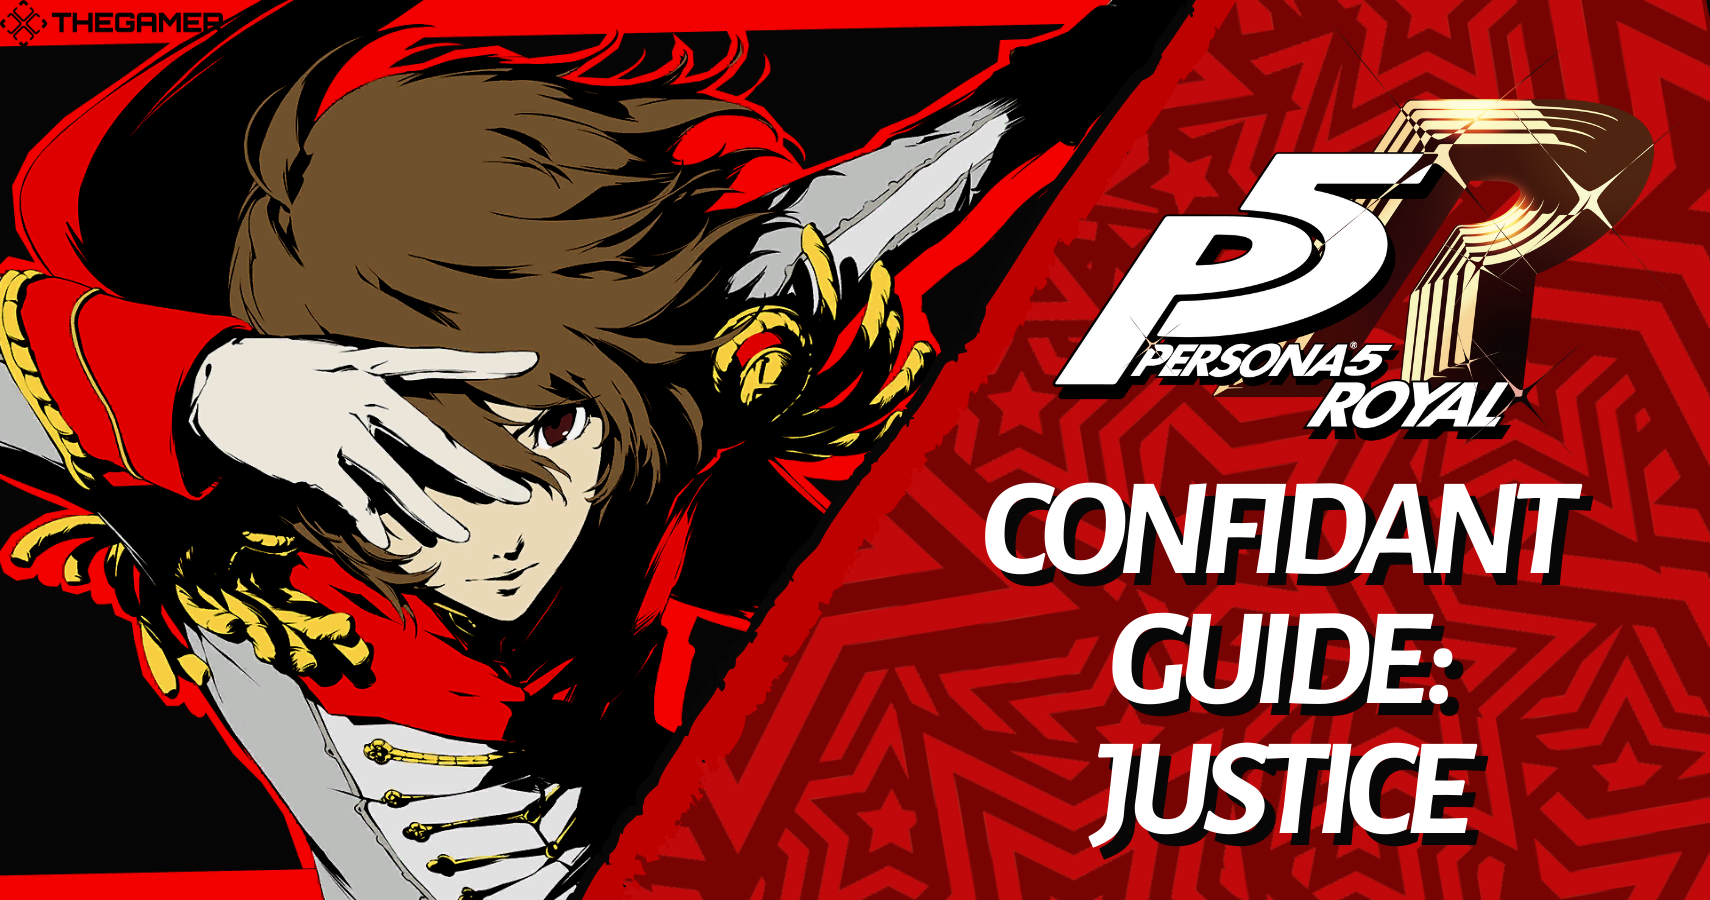 Persona 5 Royal Confidant Guide: Justice - Goro Akechi TheGamer. 